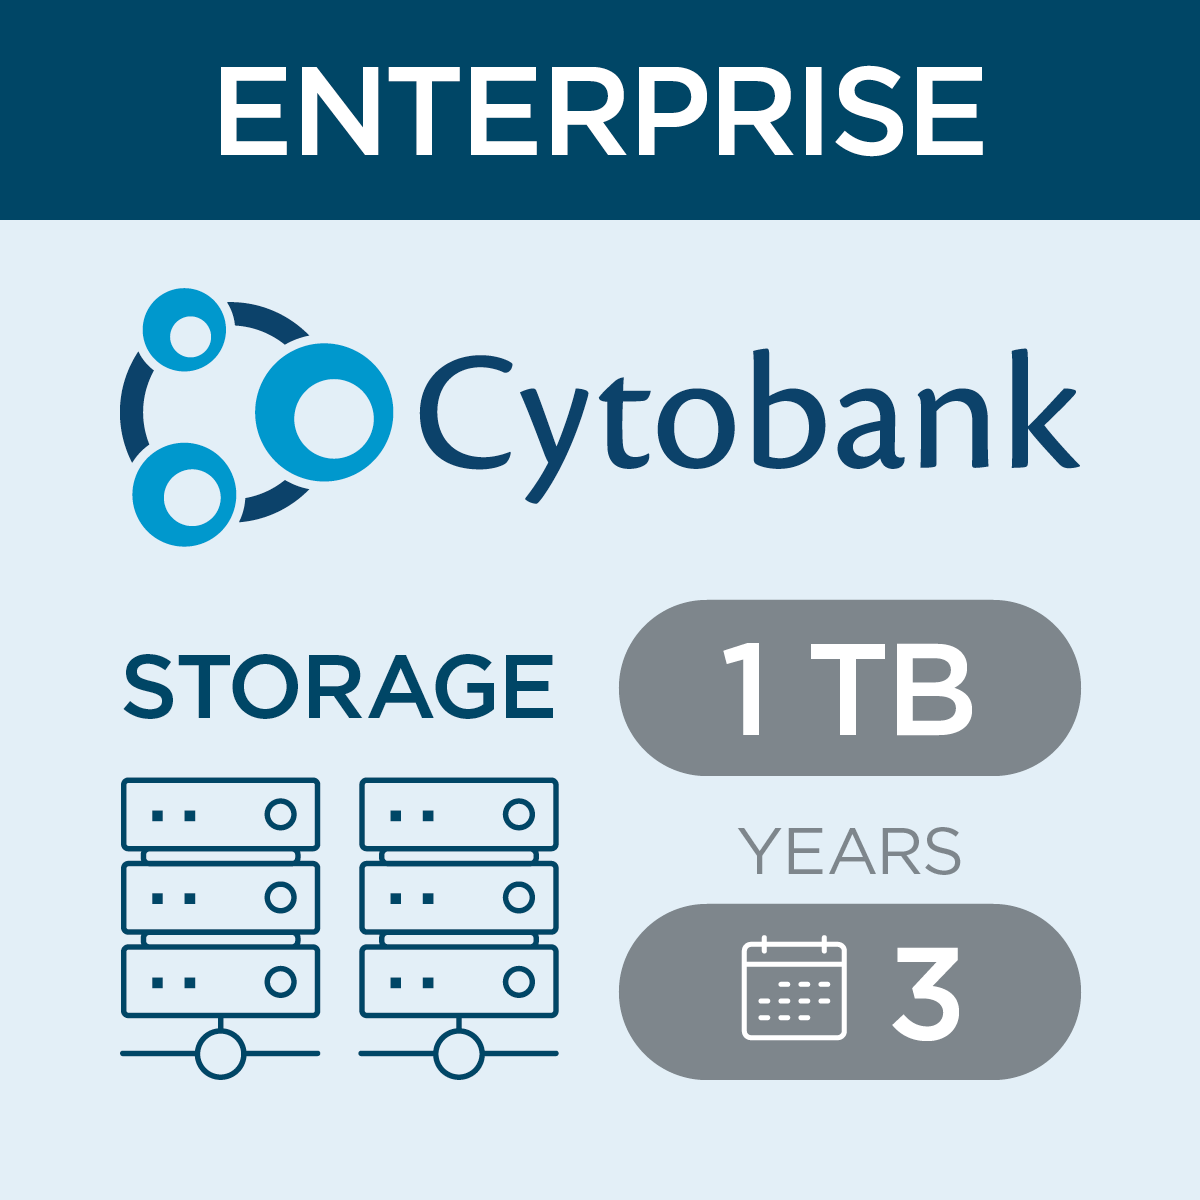 c47418, Cytobank Storage per TB for Enterprise, 3-year